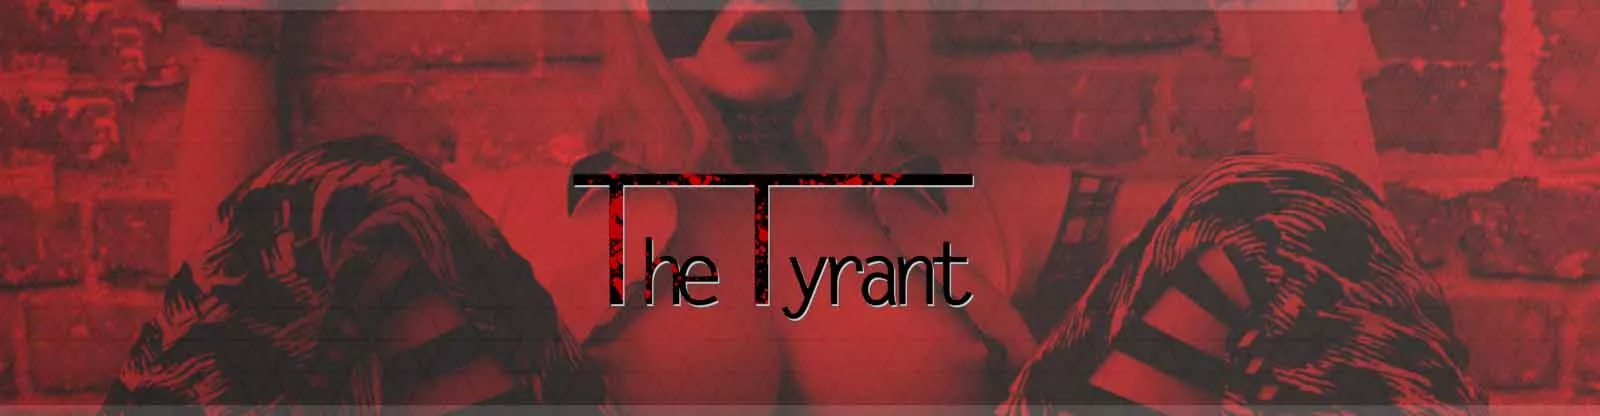 O jogo de sexo Tyrant 3d, jogo pornô, jogo adulto